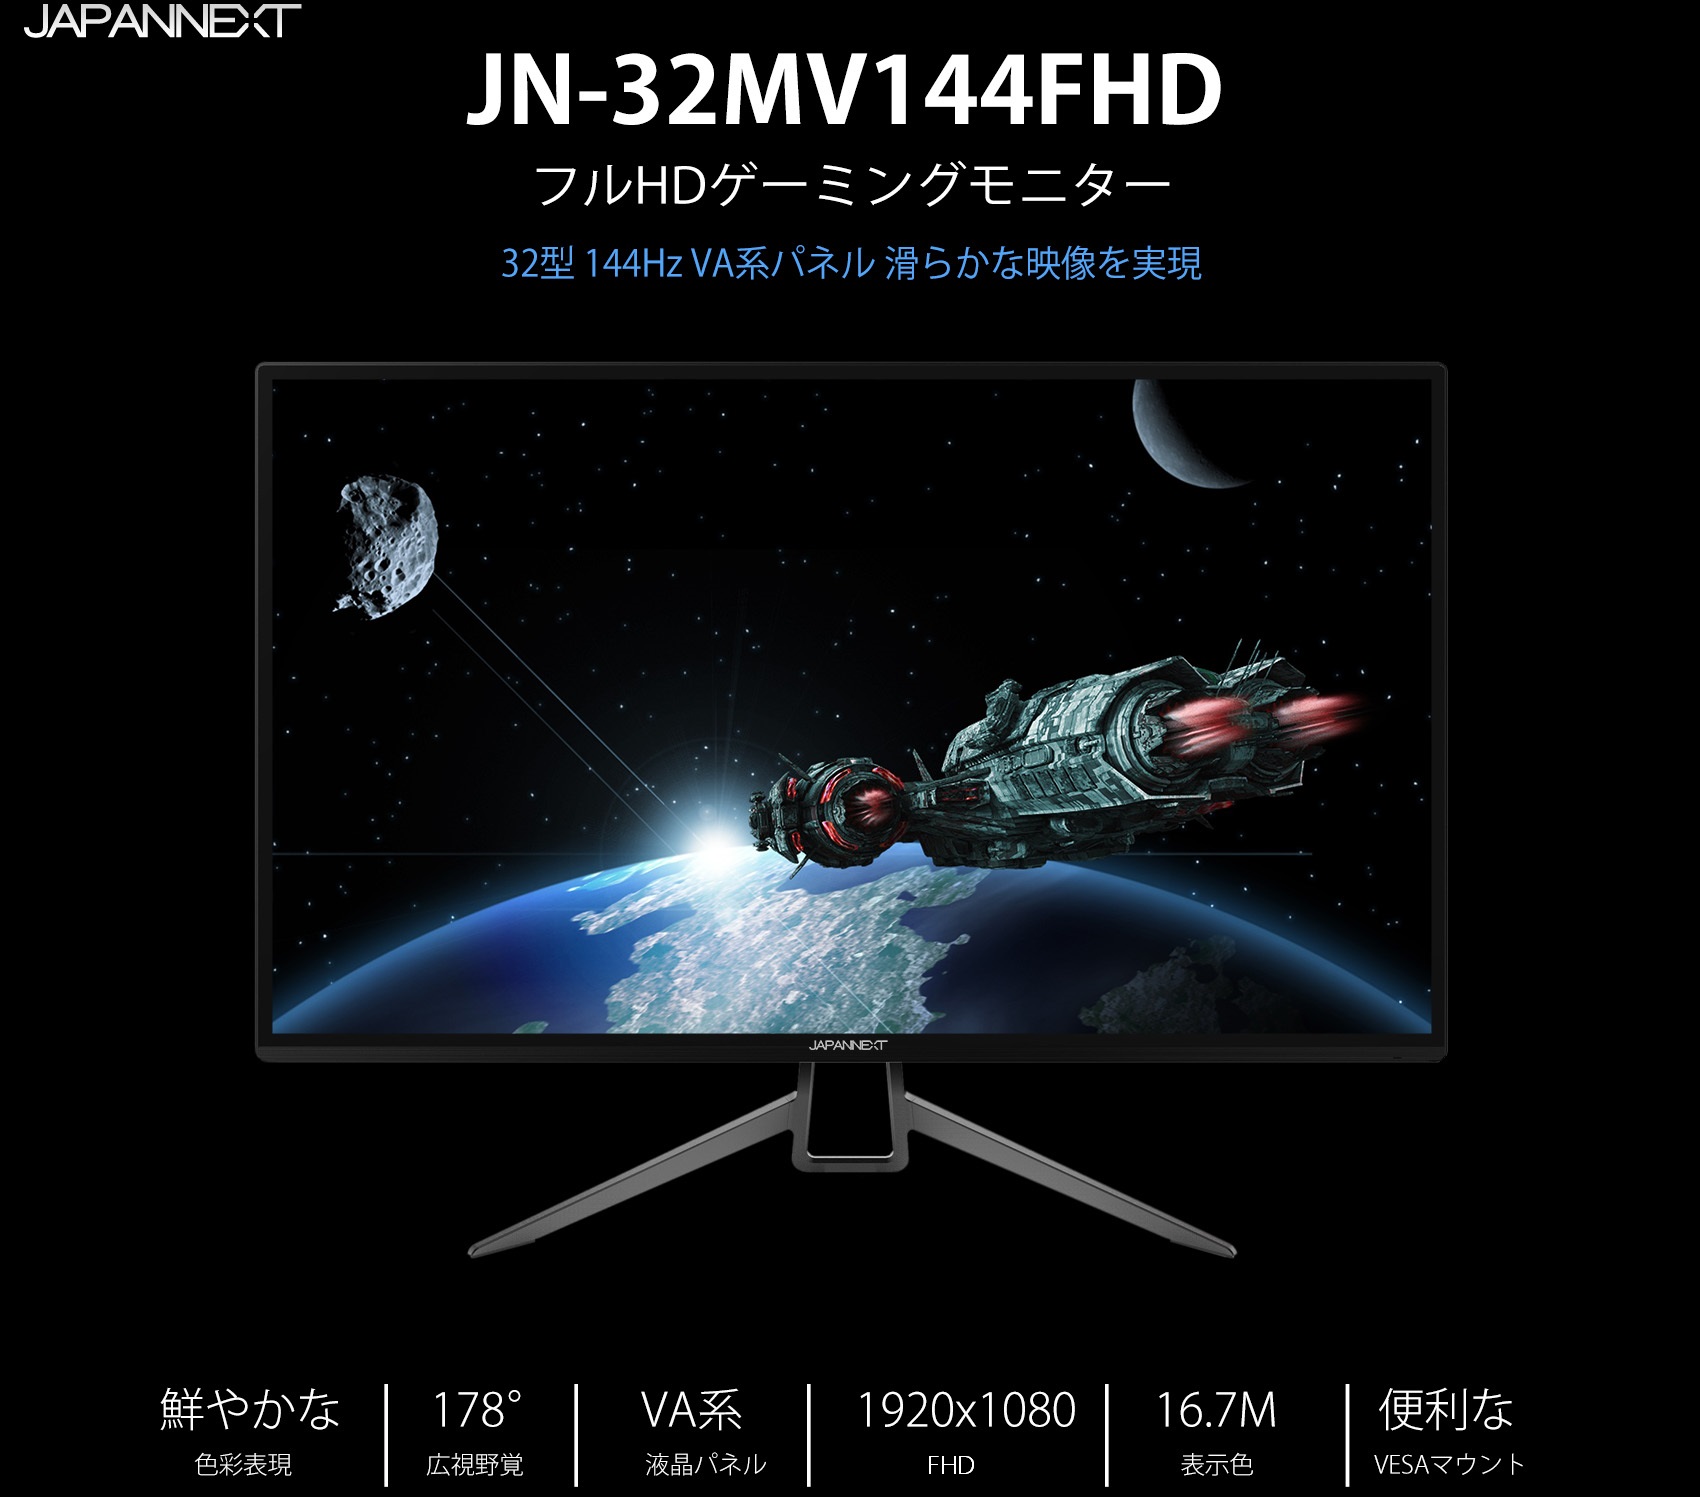 生産終了〉JAPANNEXT JN-32MV144FHD 32インチ 144hz ゲーミング 